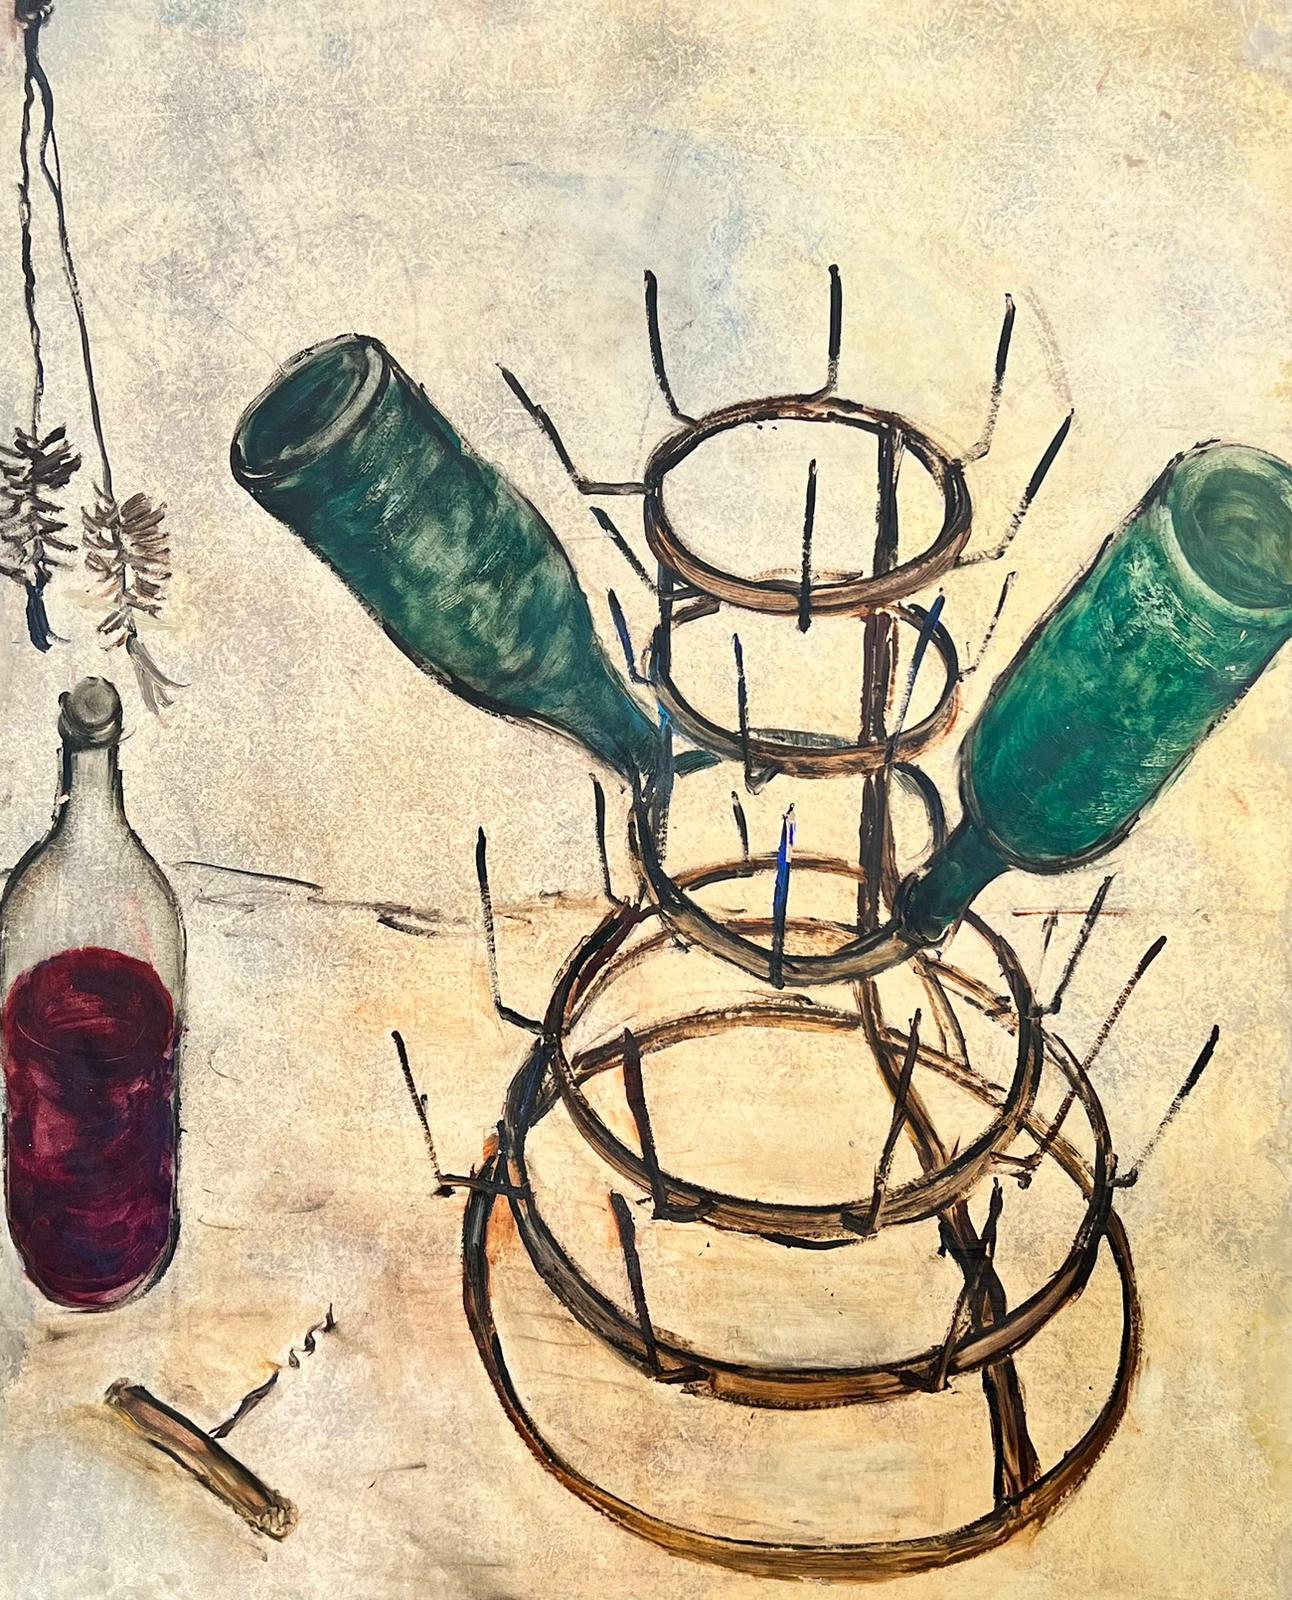 Bouteilles de vin à l'huile expressionniste française des années 1960 séchant sur un support métallique - Painting de Circle of Bernard Buffet